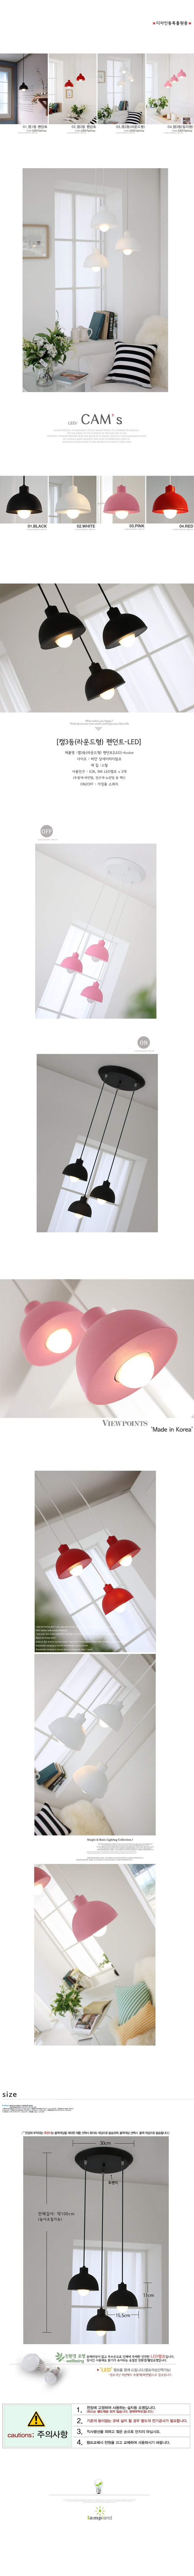 [LED]캠3등 라운드형 펜던트(블랙(품절)/화이트/핑크/레드)